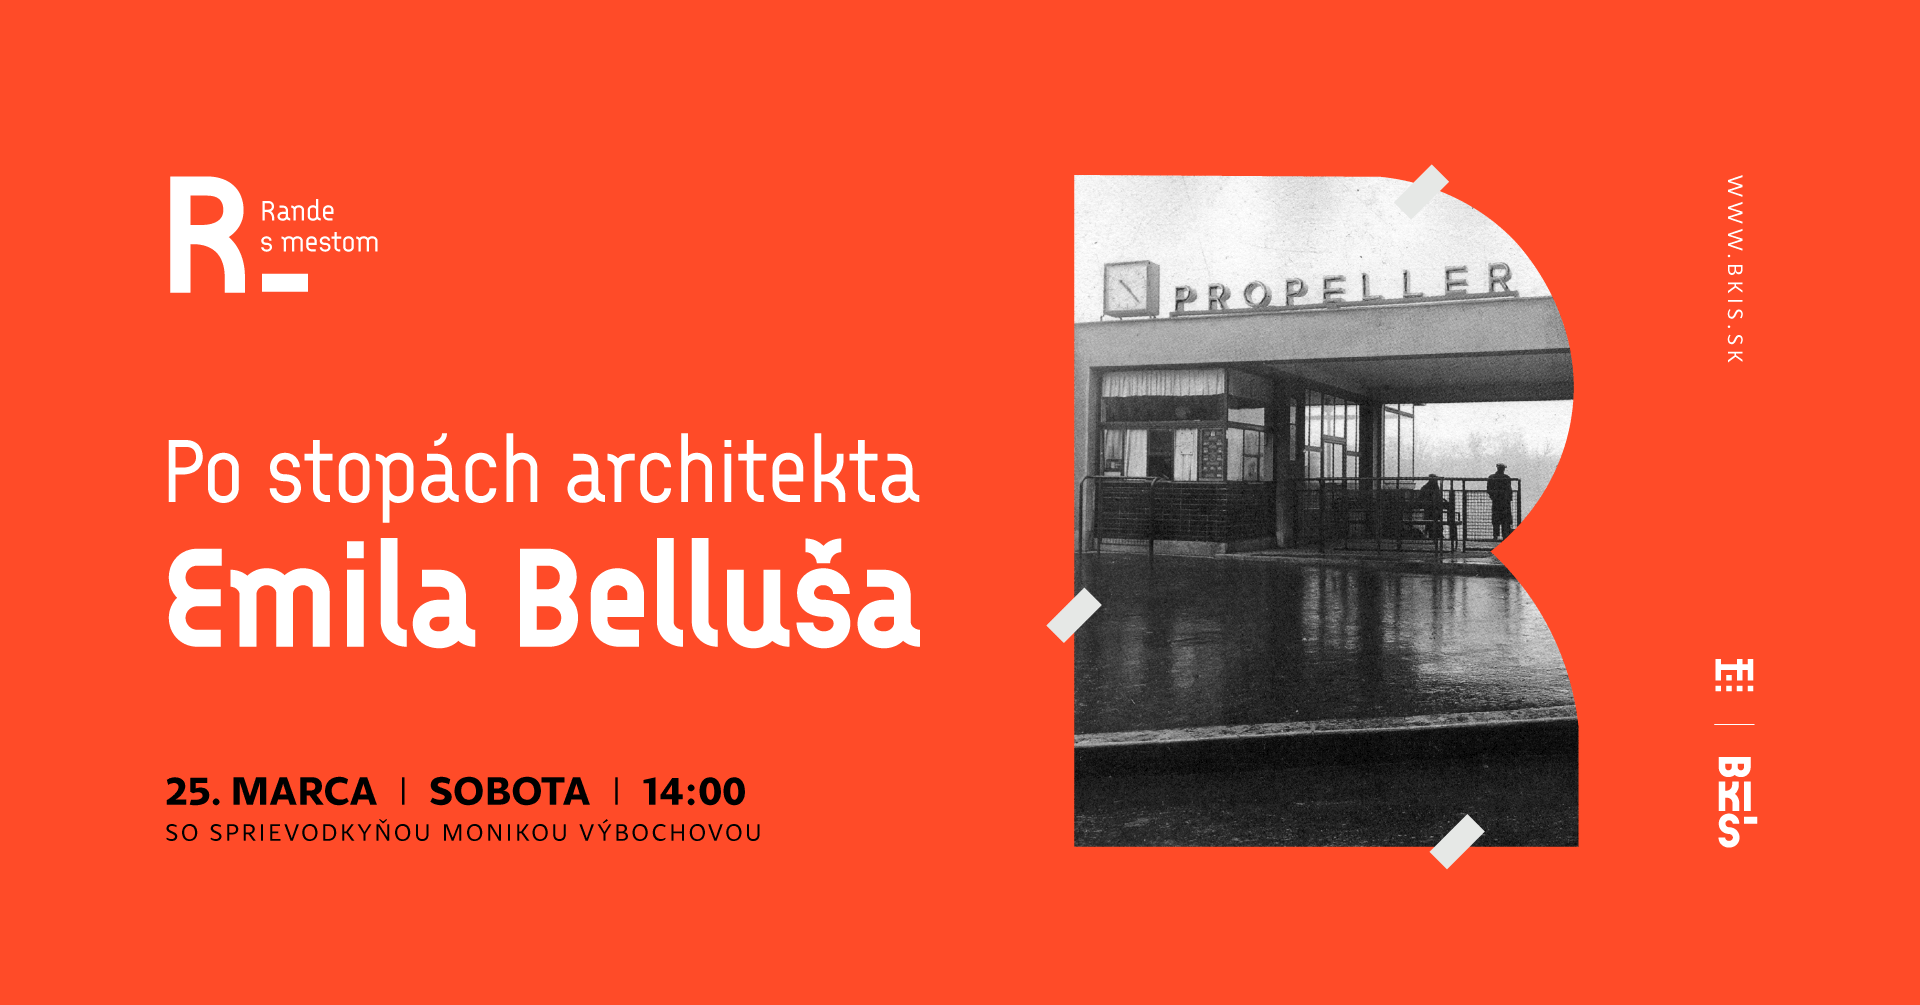 ande s mestom: Po stopách architekta Emila Belluša